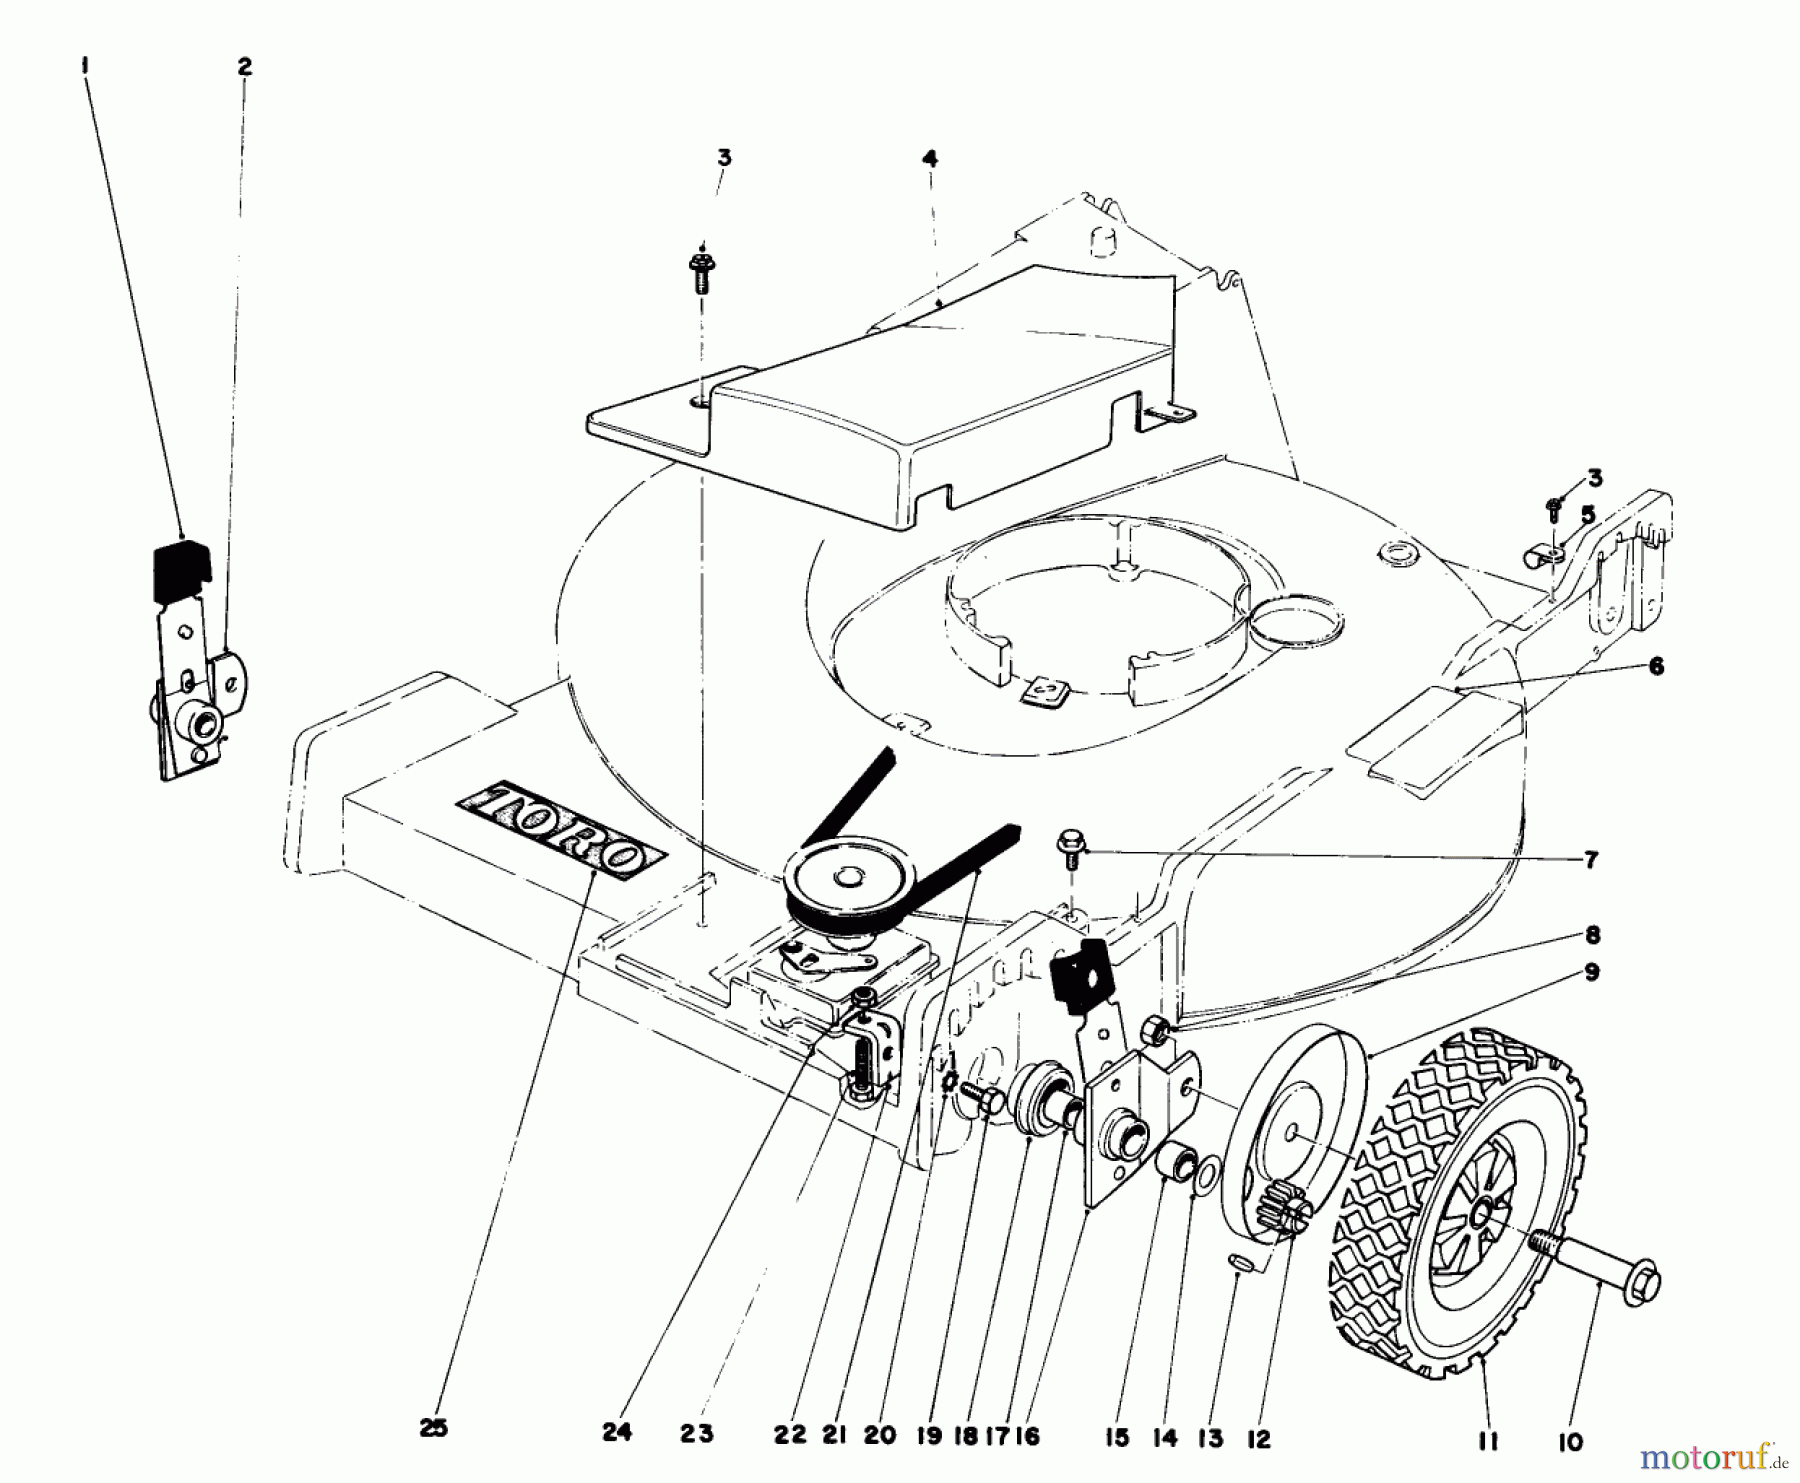  Toro Neu Mowers, Walk-Behind Seite 1 20765 - Toro Lawnmower, 1980 (0000001-0999999) FRONT WHEEL AND PIVOT ARM ASSEMBLY